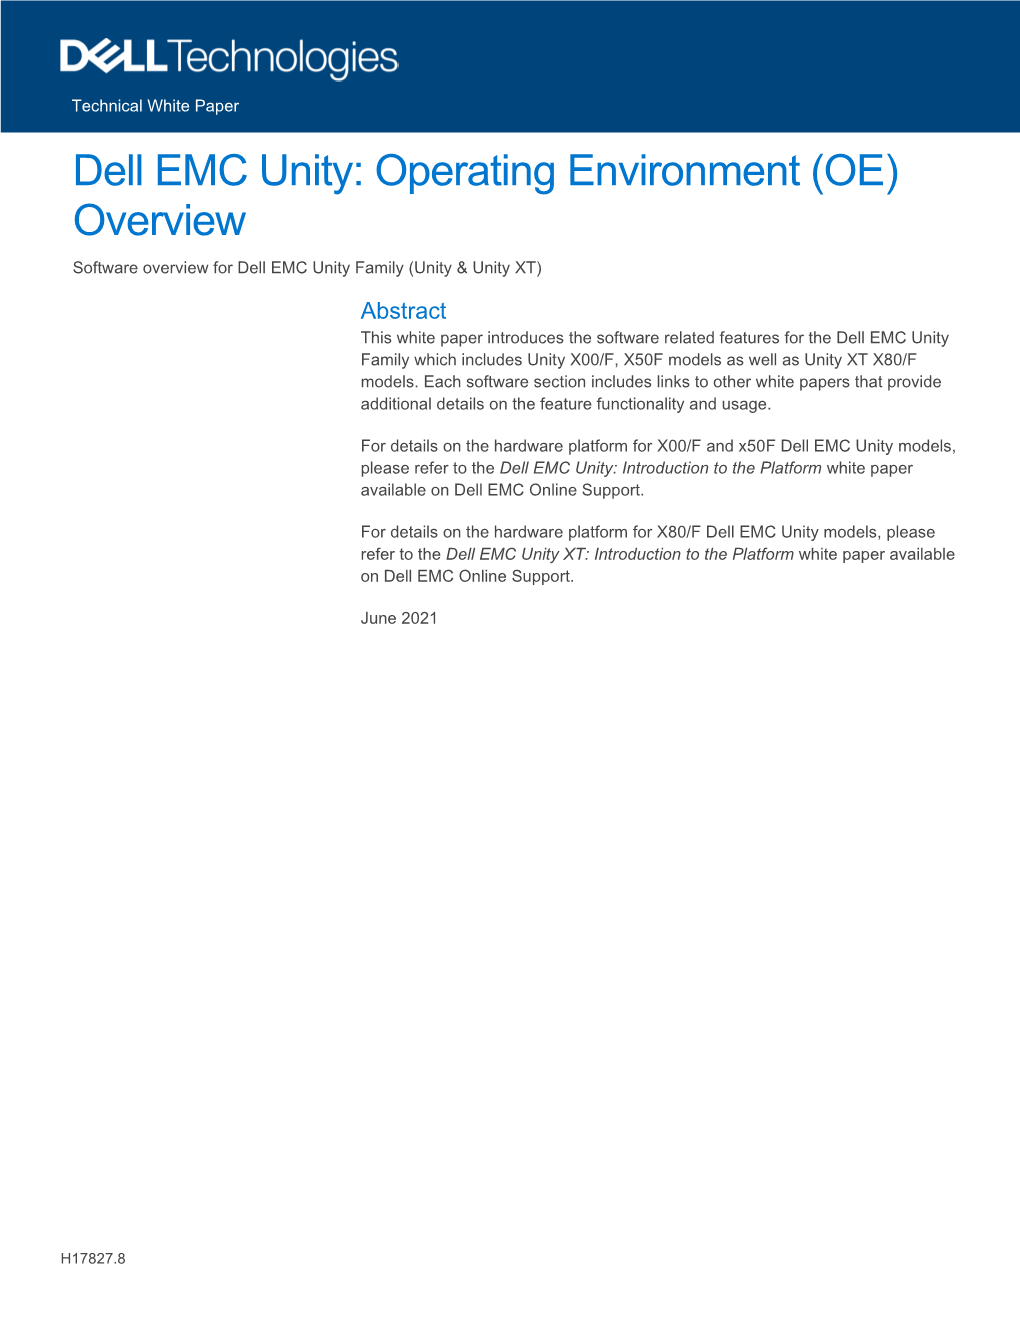 Dell EMC Unity: Operating Environment (OE) Overview Software Overview for Dell EMC Unity Family (Unity & Unity XT)